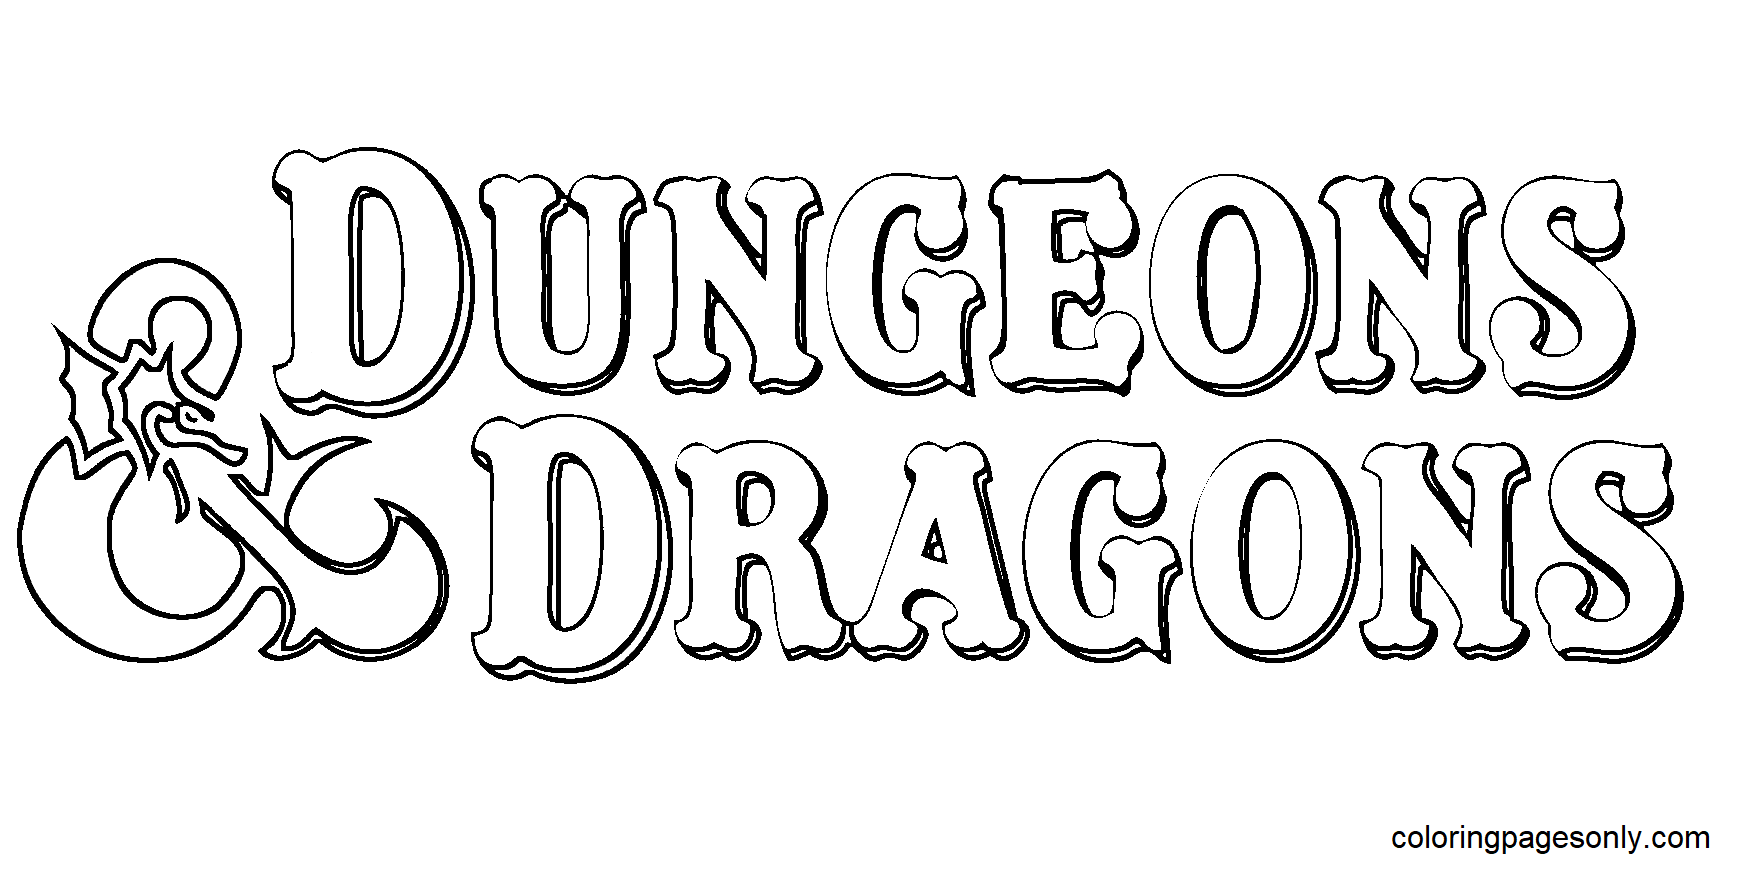 Kleurplaat Dungeons and Dragons Logo